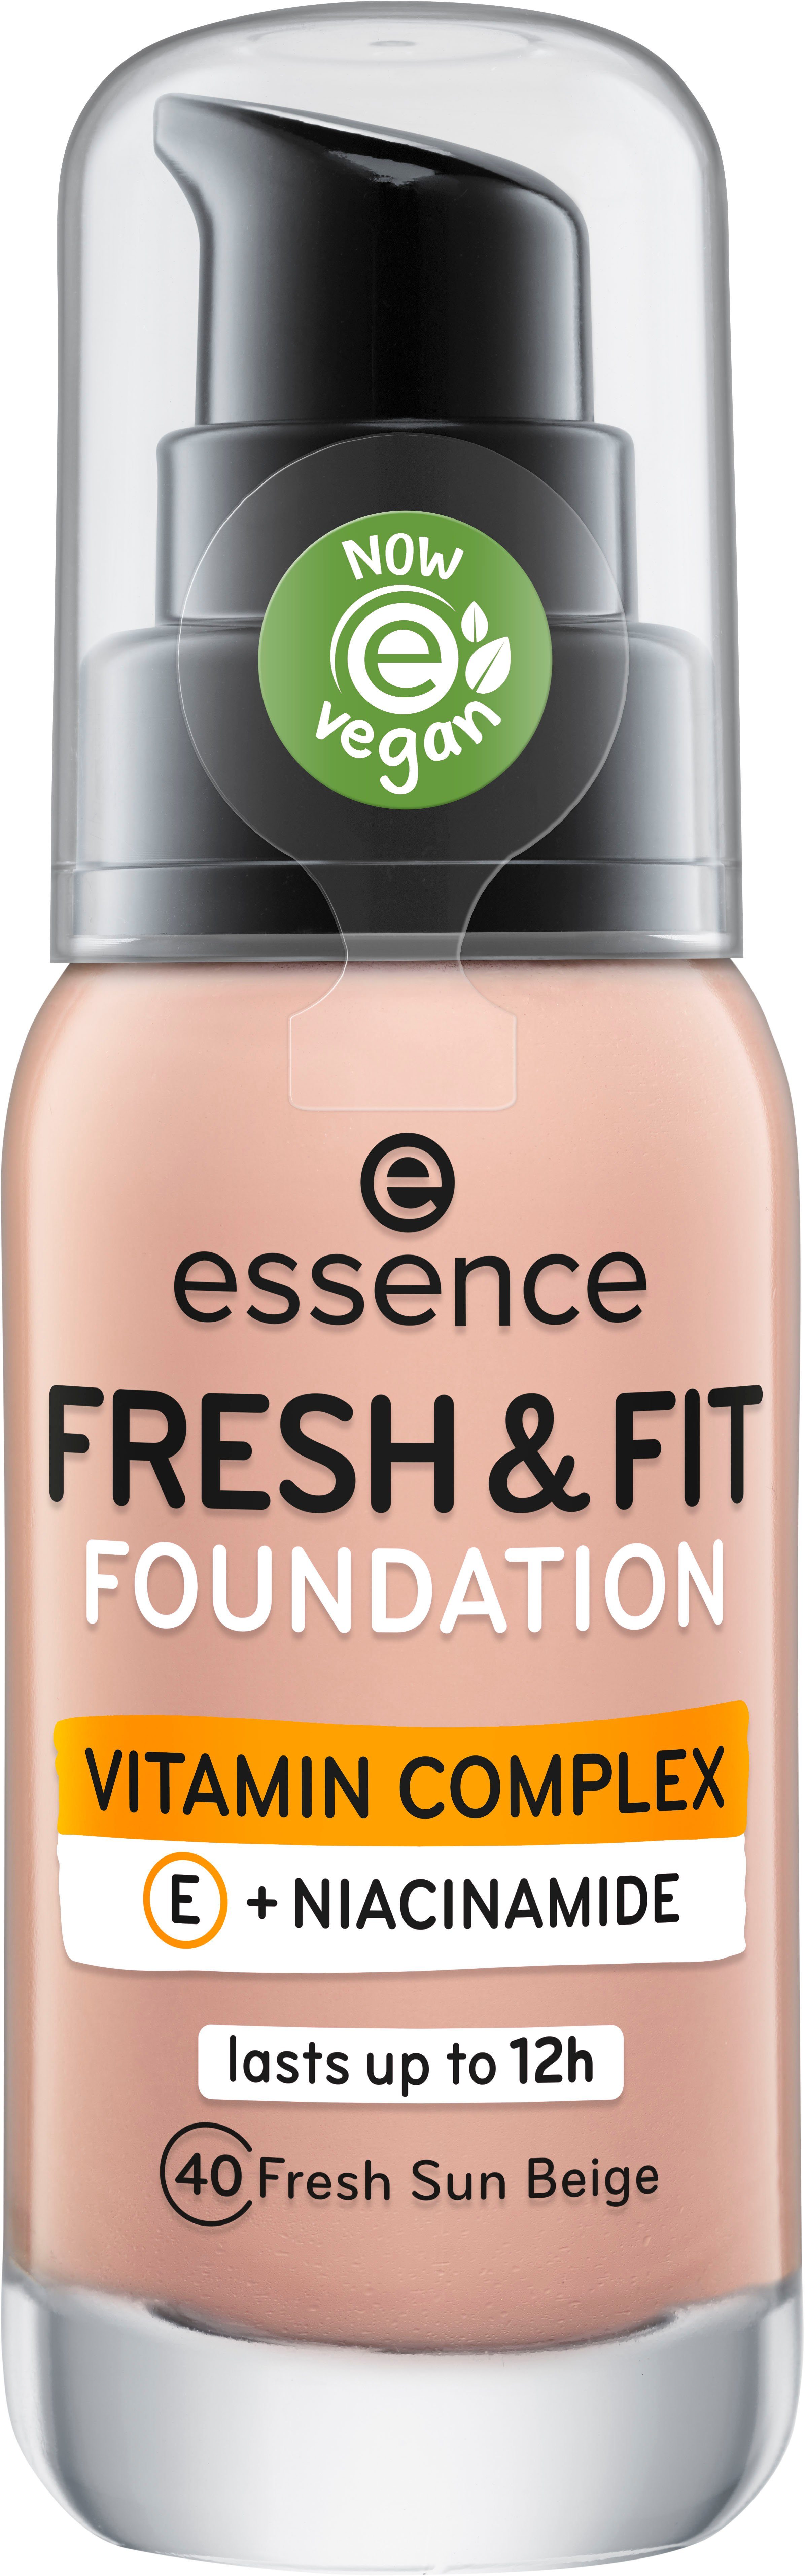 Foundation FRESH fresh & sun FOUNDATION, Essence 3-tlg. FIT beige